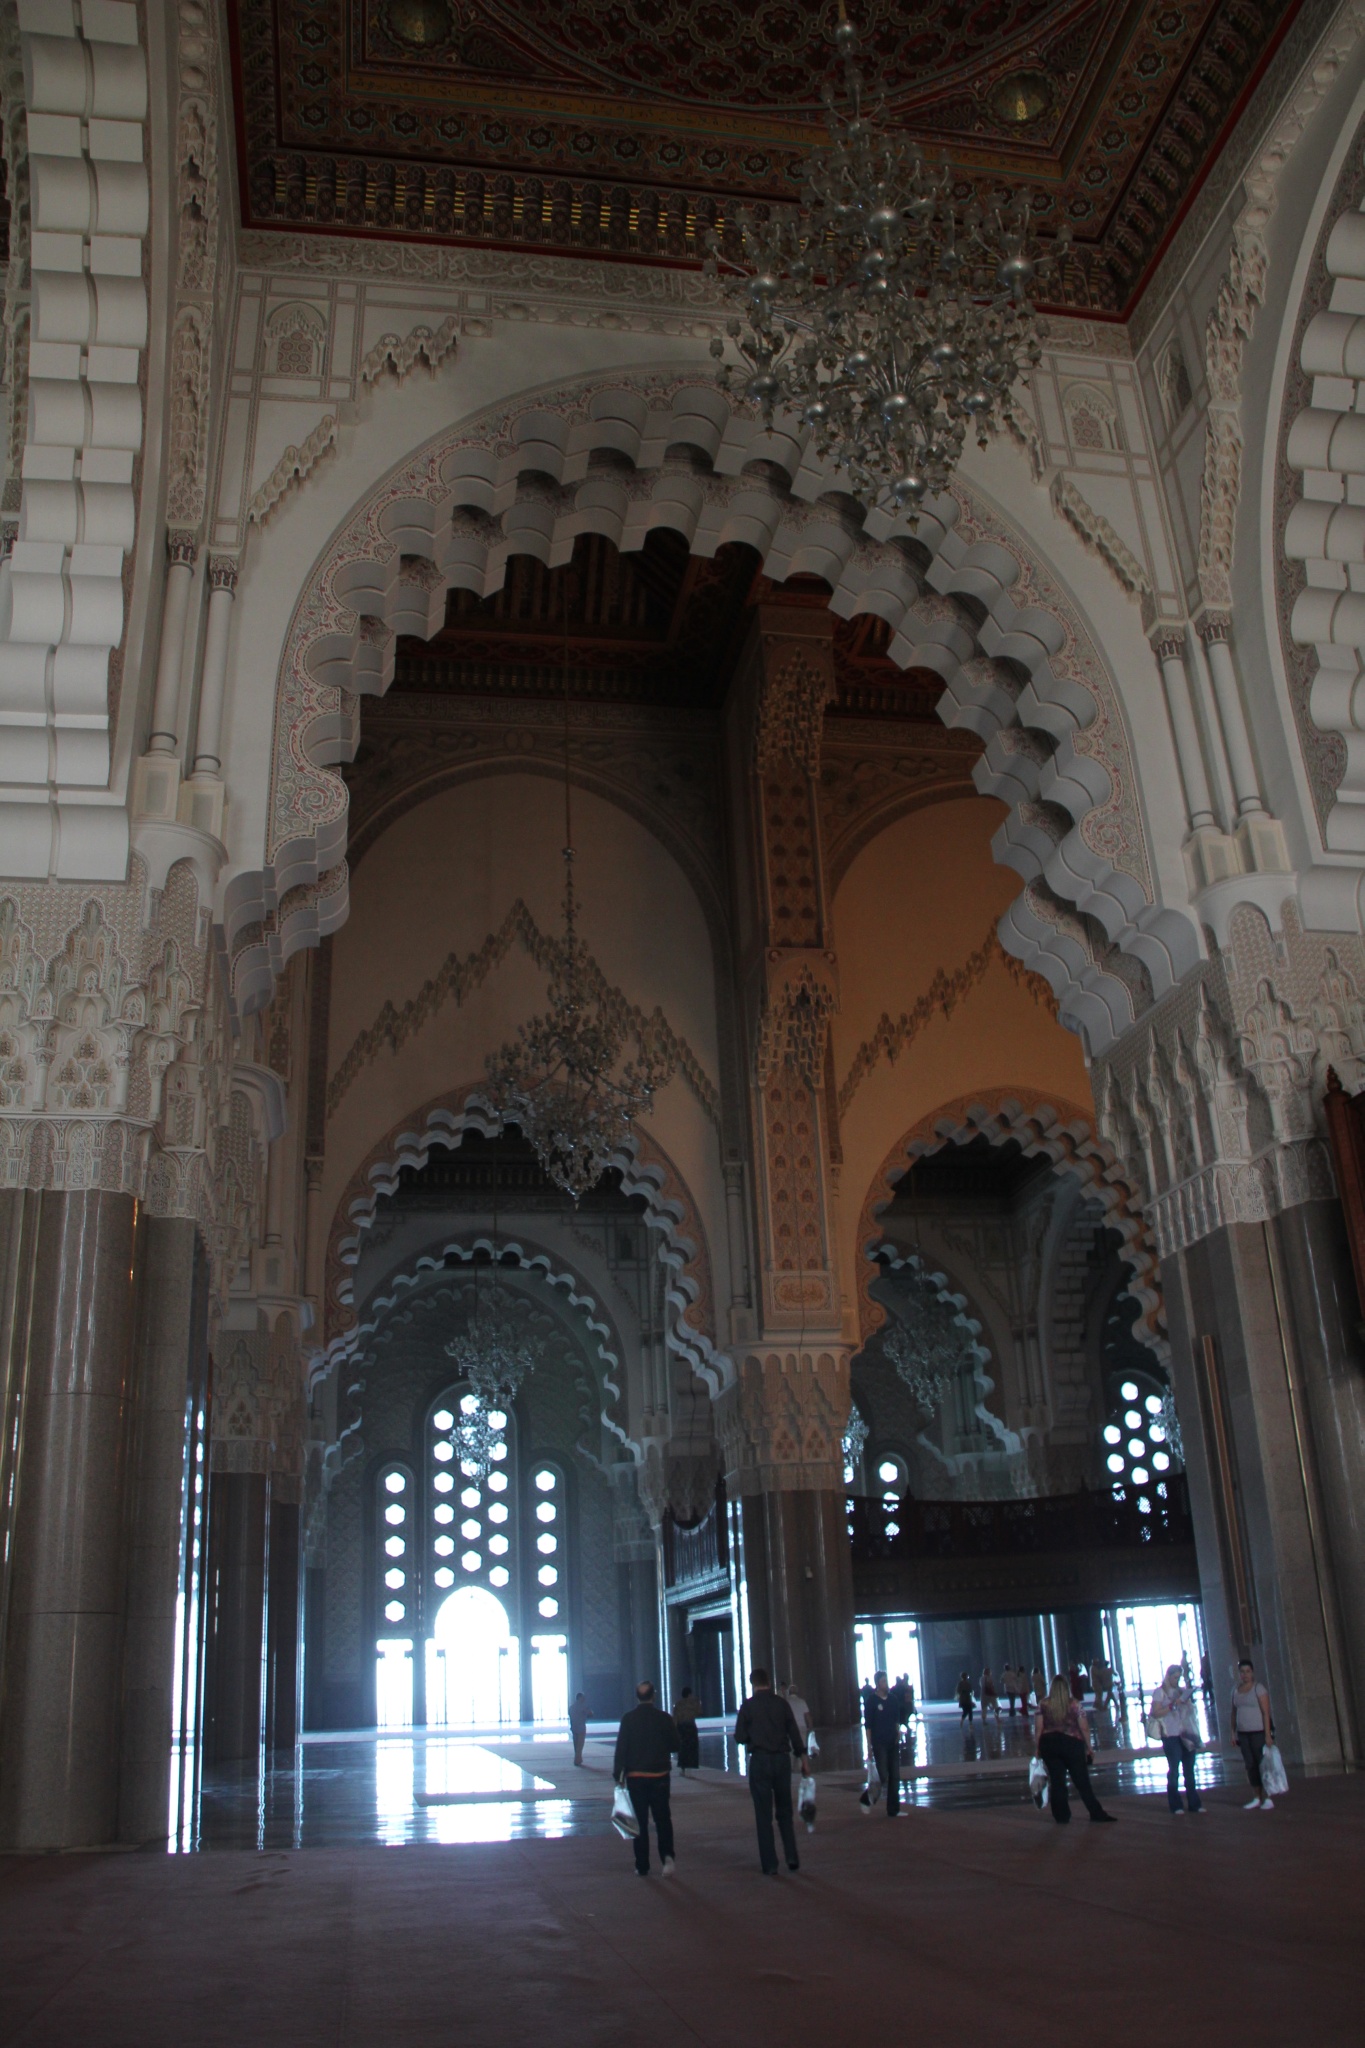 King Hassan II Mosque interior